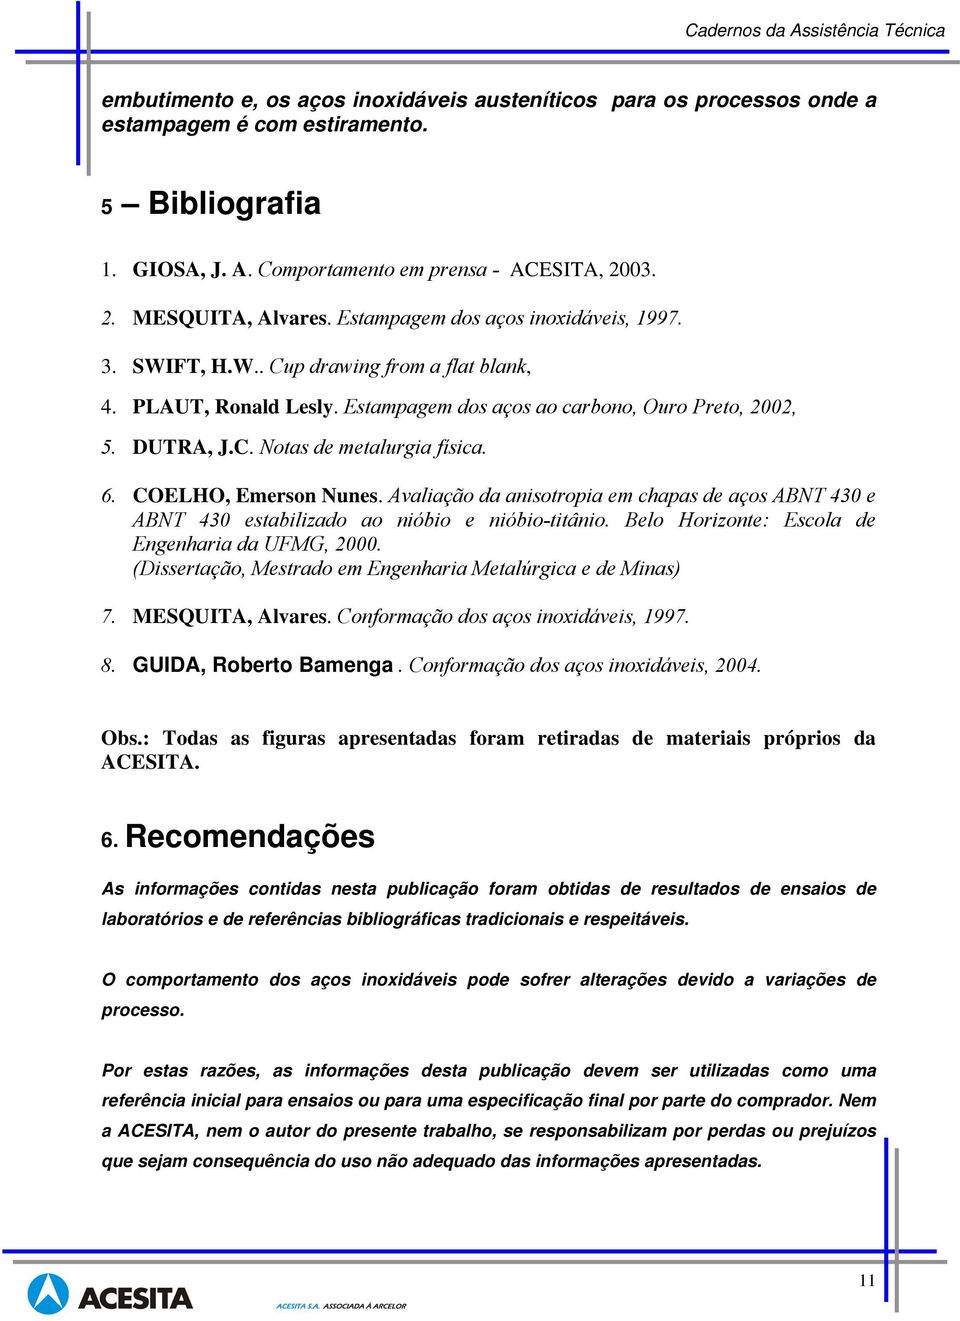 6. COELHO, Emerson Nunes. Avaliação da anisotropia em chapas de aços ABNT 430 e ABNT 430 estabilizado ao nióbio e nióbio-titânio. Belo Horizonte: Escola de Engenharia da UFMG, 2000.